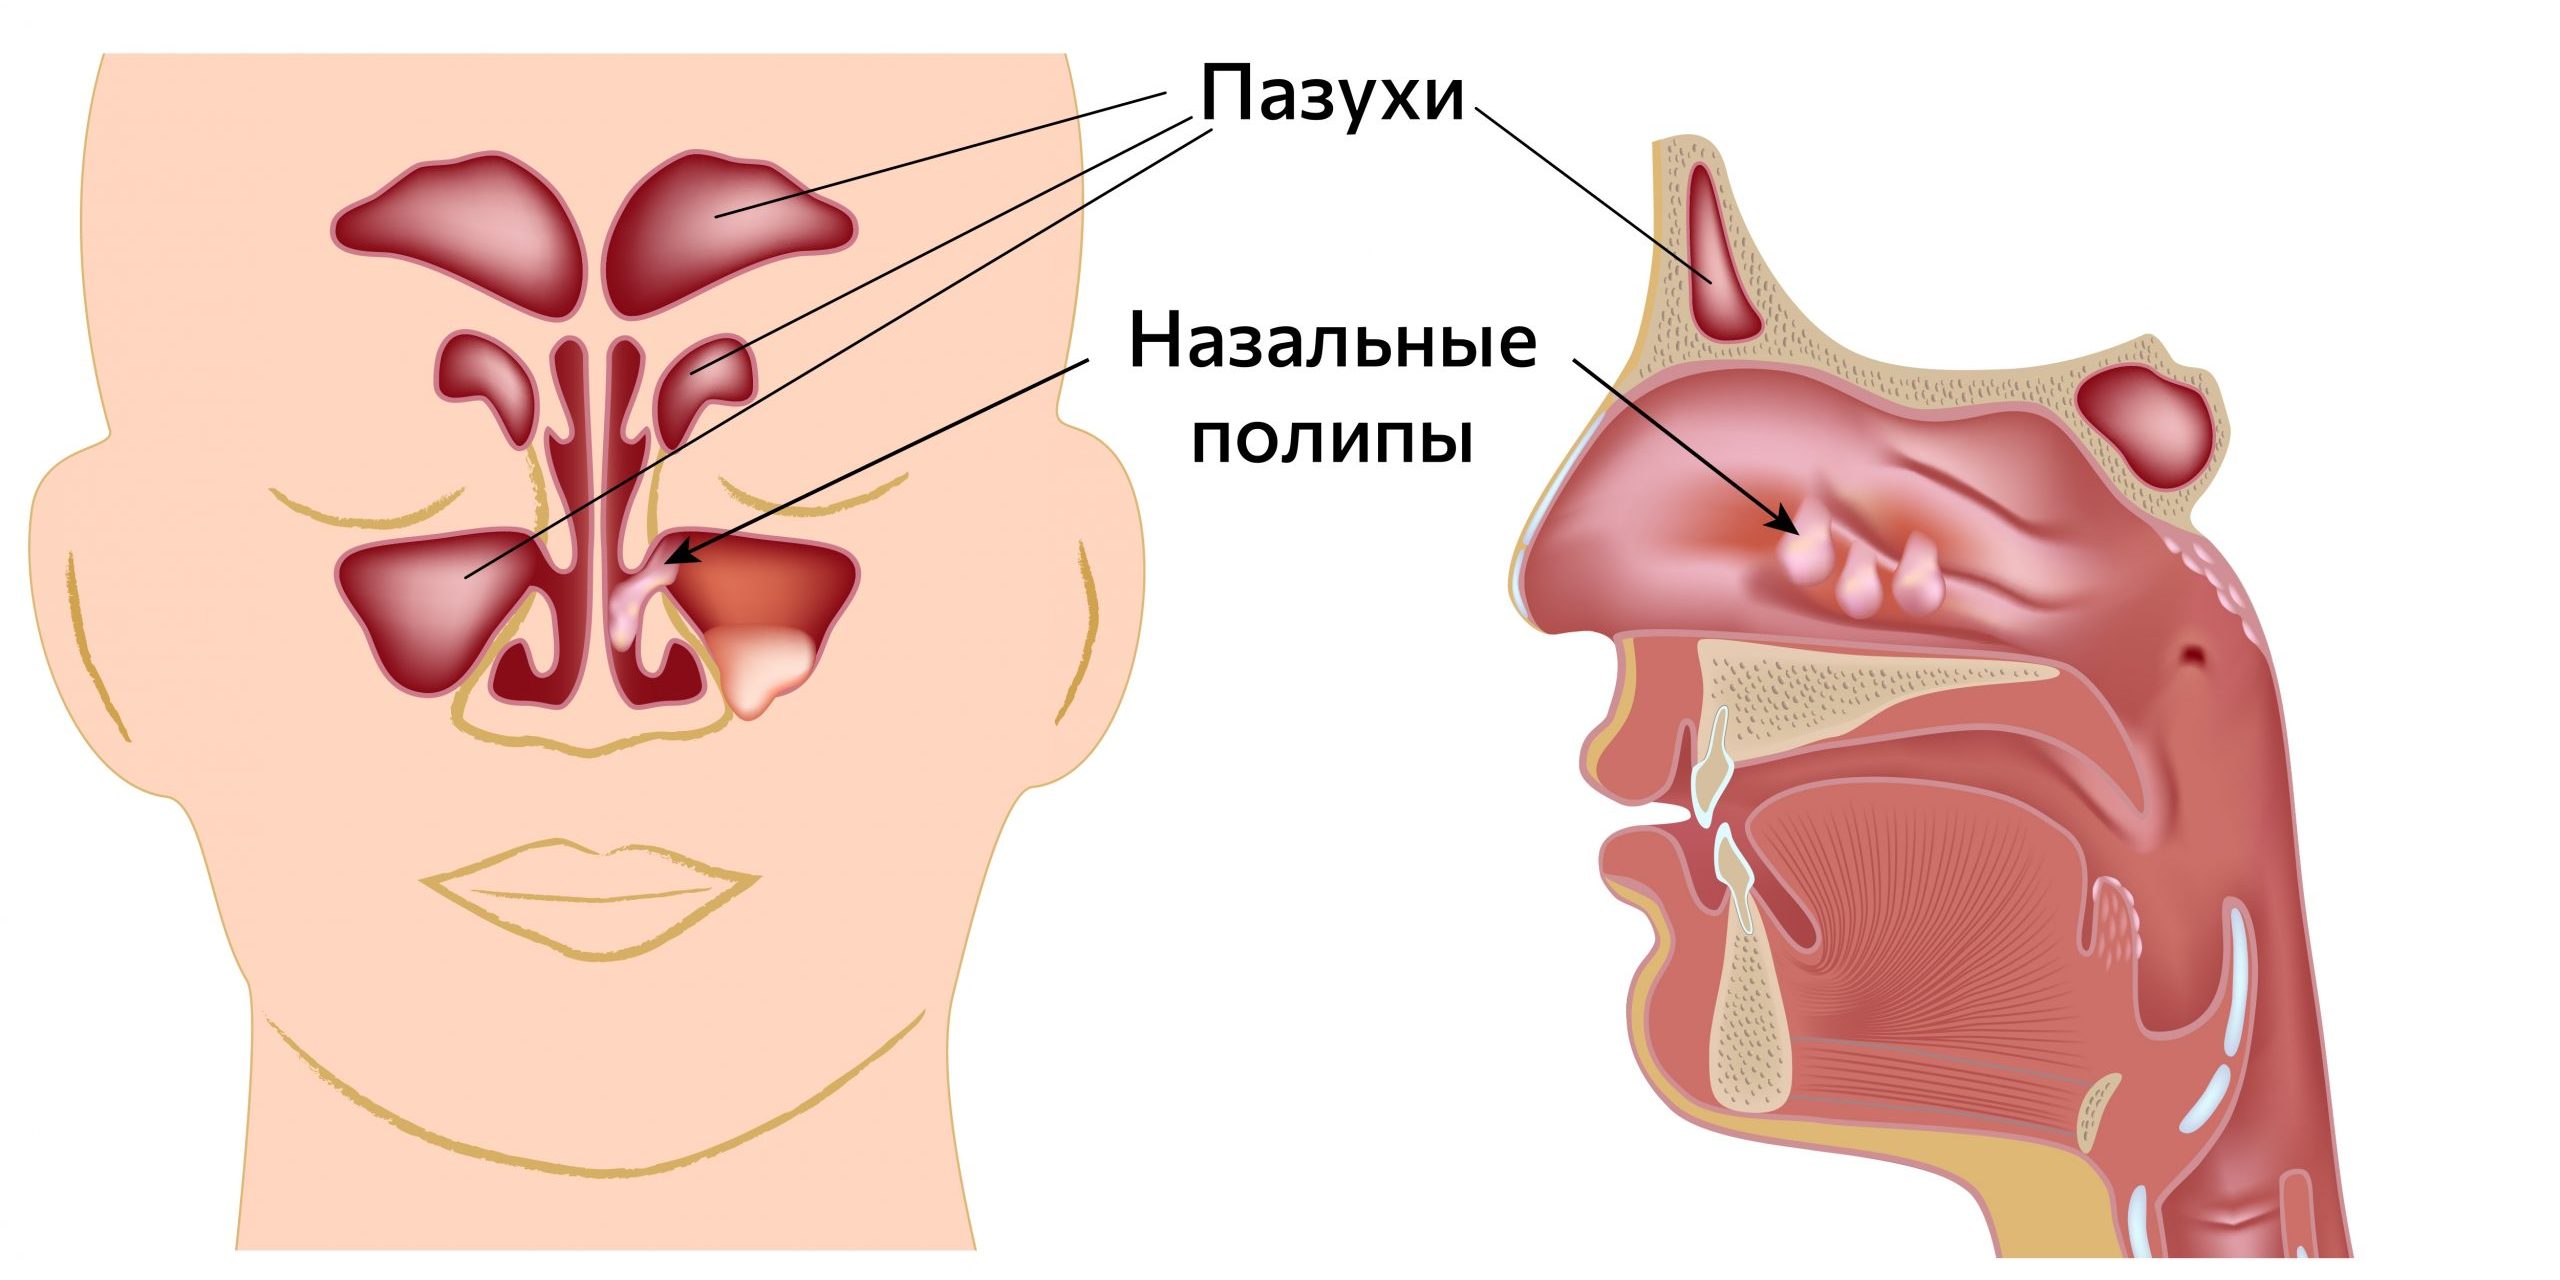 Полипы в носу: симптомы причины, лечение